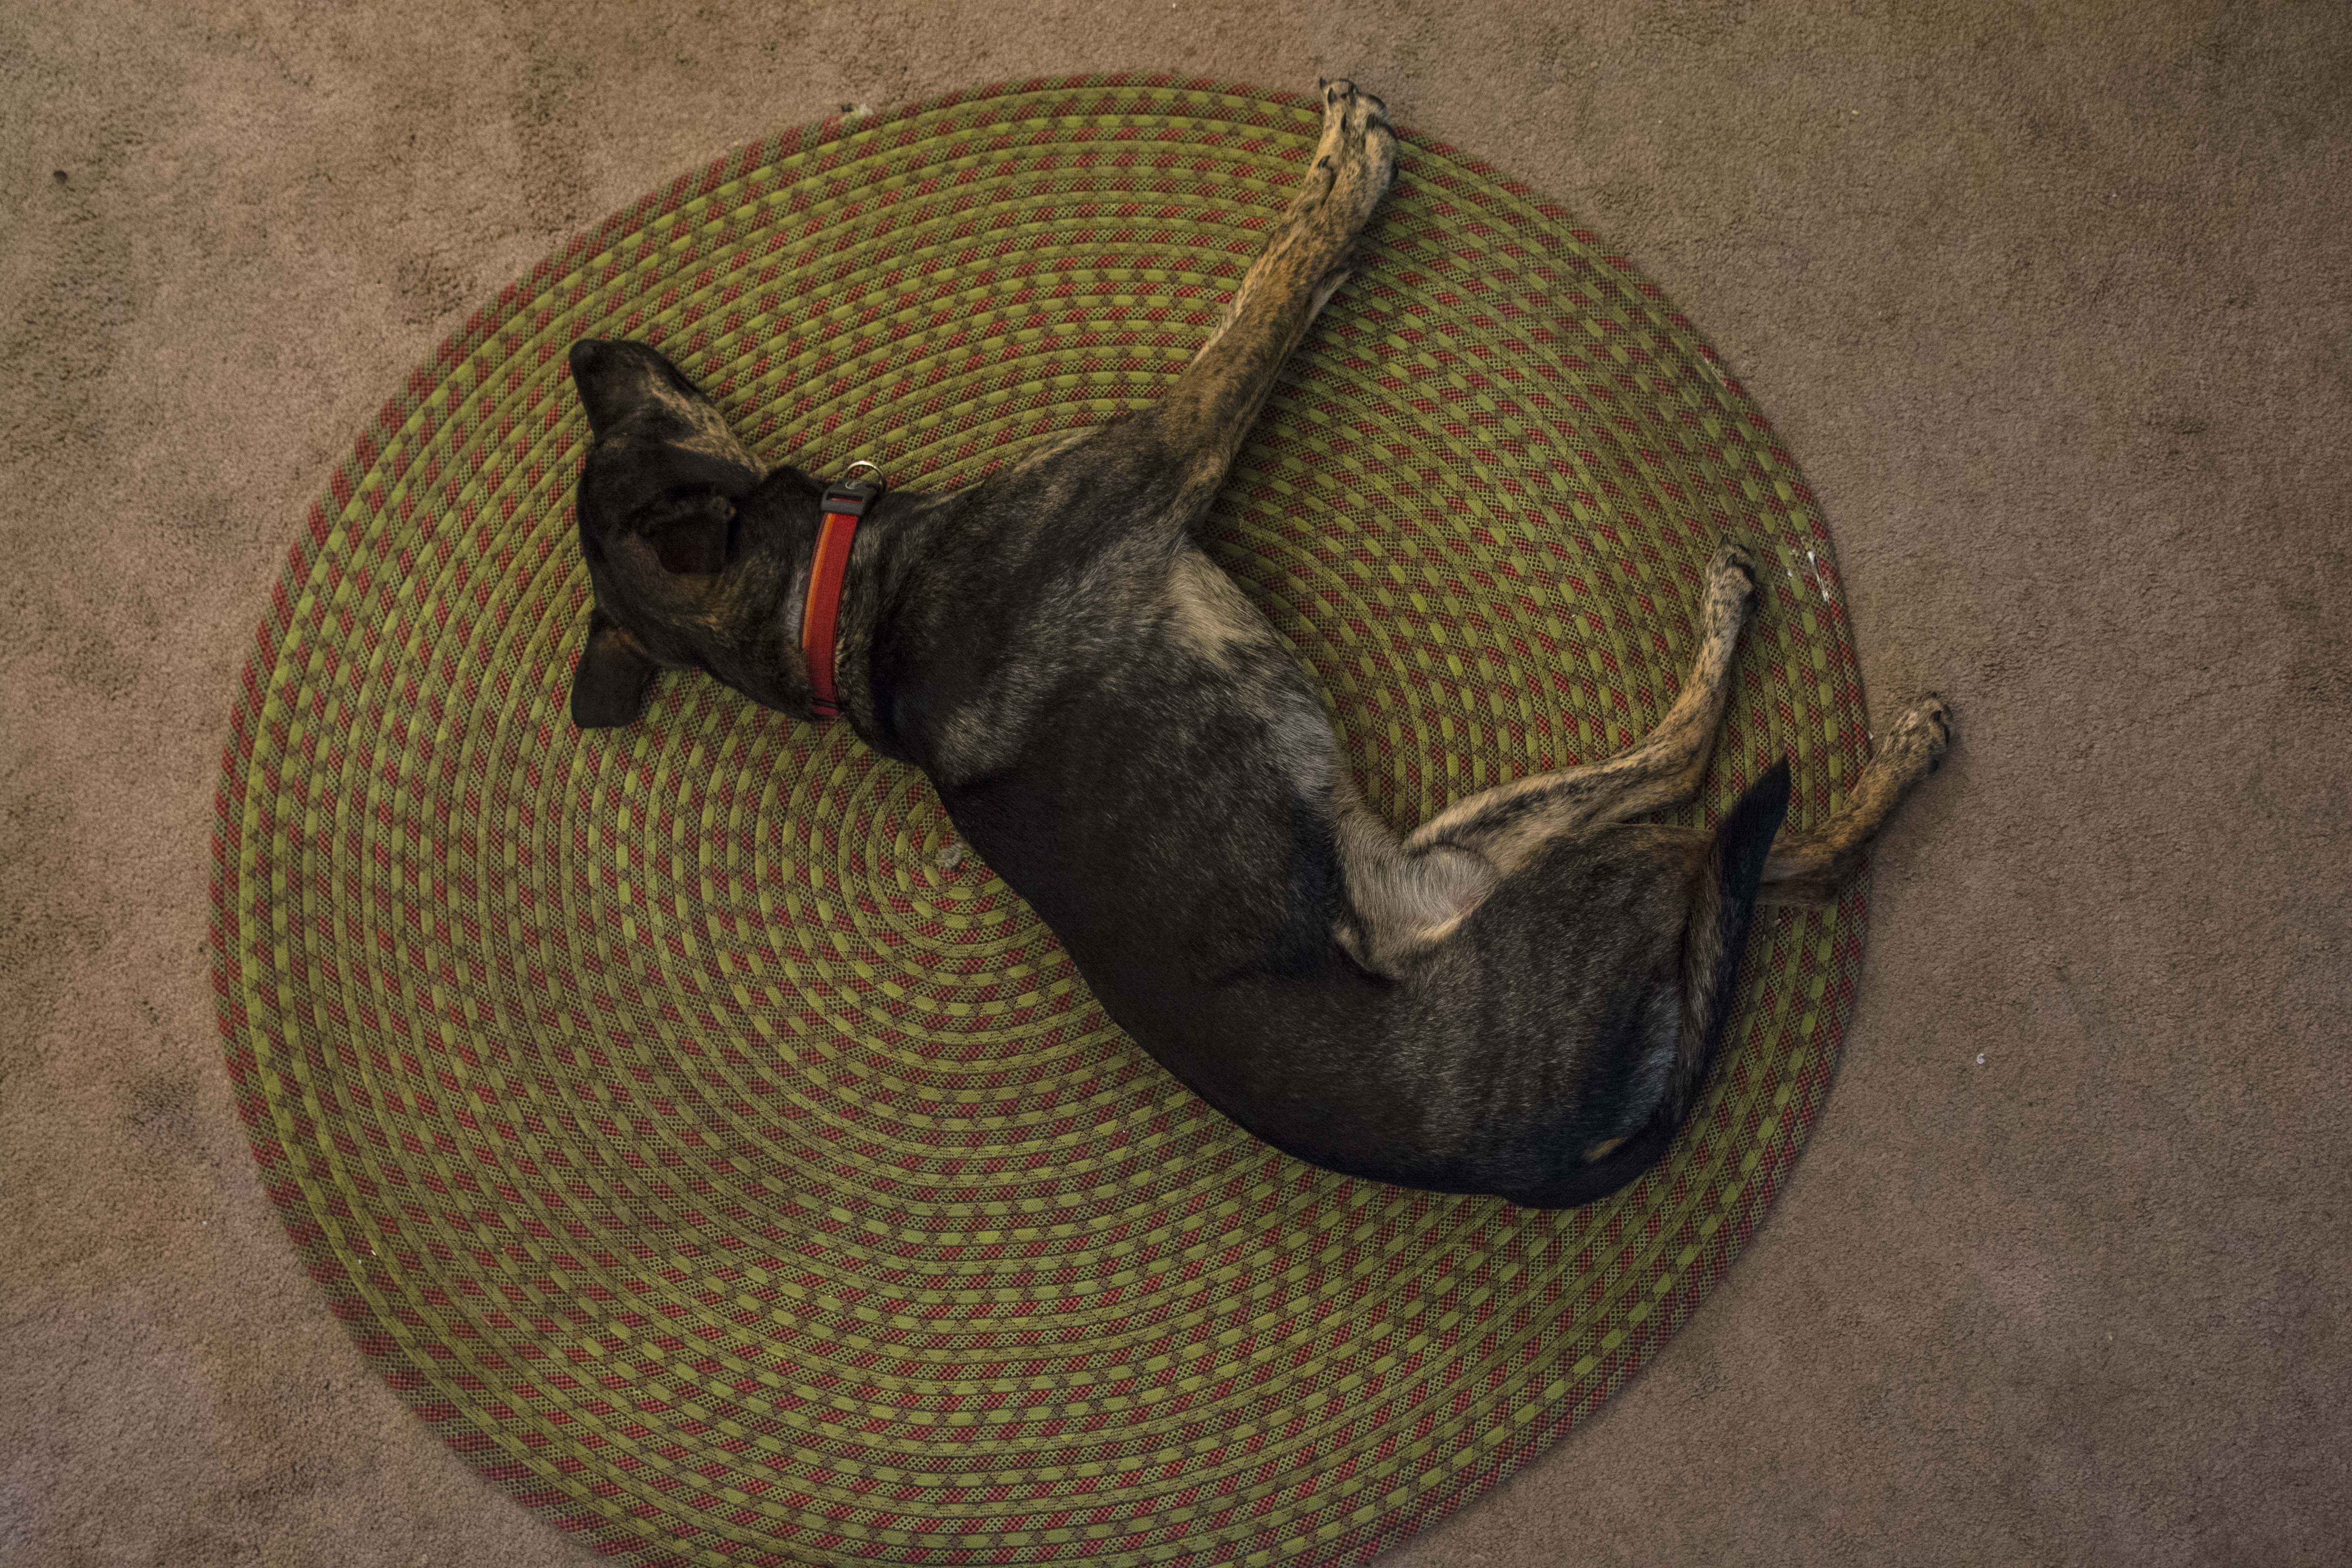 Dog sleeping on rug